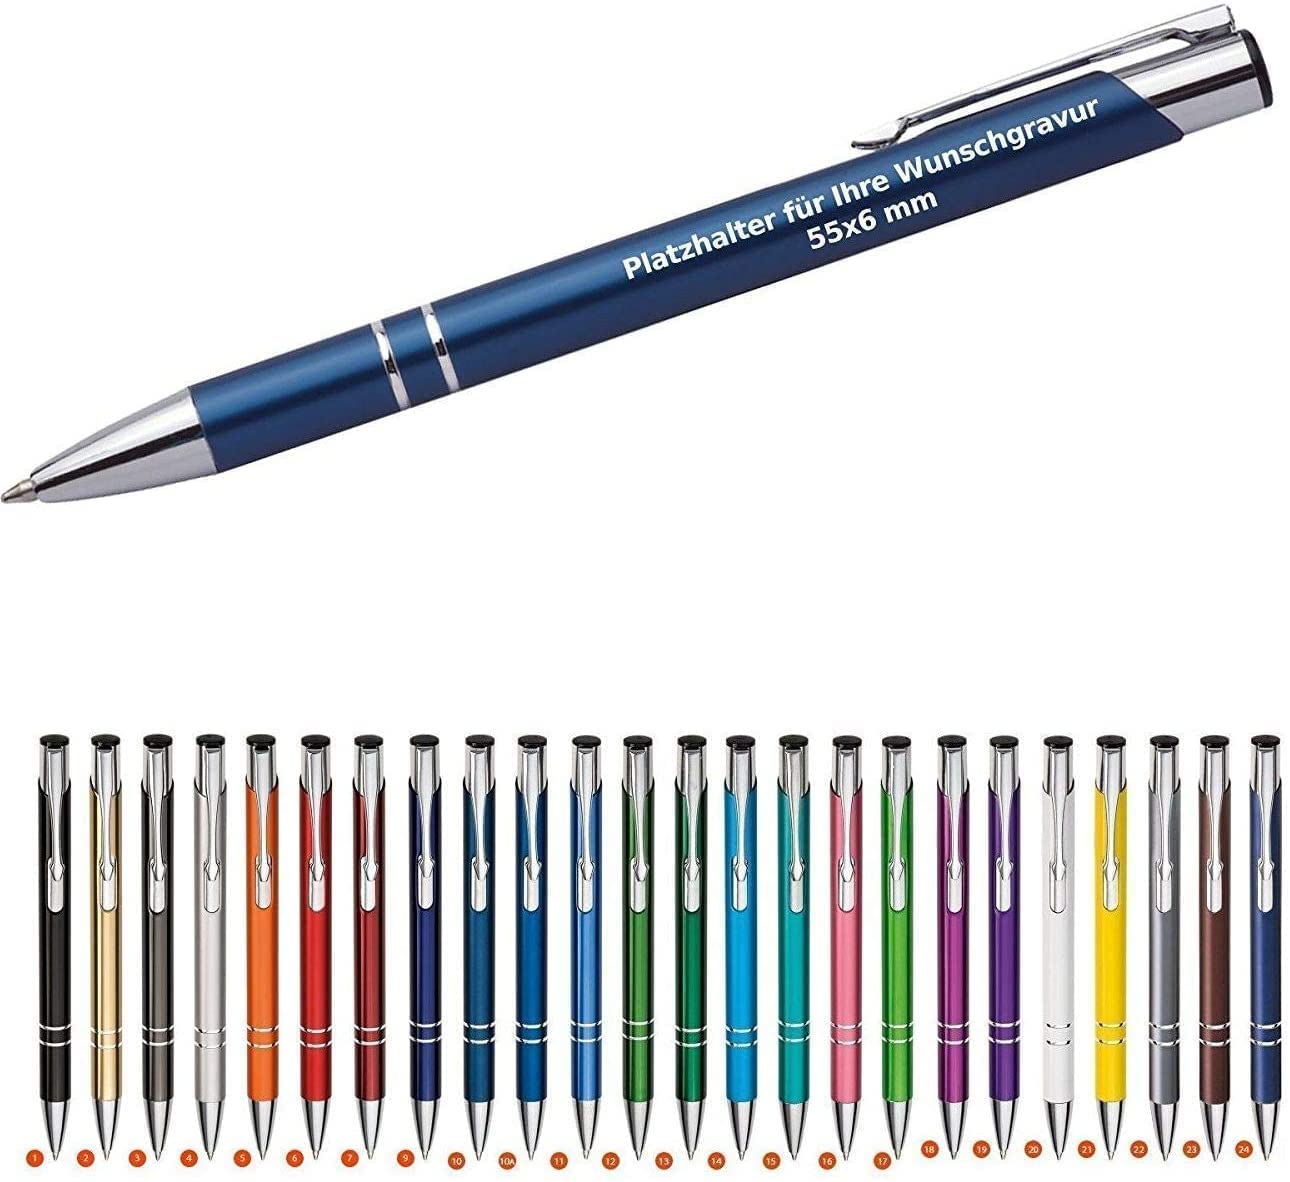 WPRO 100 x Cosima Kugelschreiber, dunkelblau aus Metall mit Gravur (Neu & alle mit gleicher Wunschgravur) blauschreibend